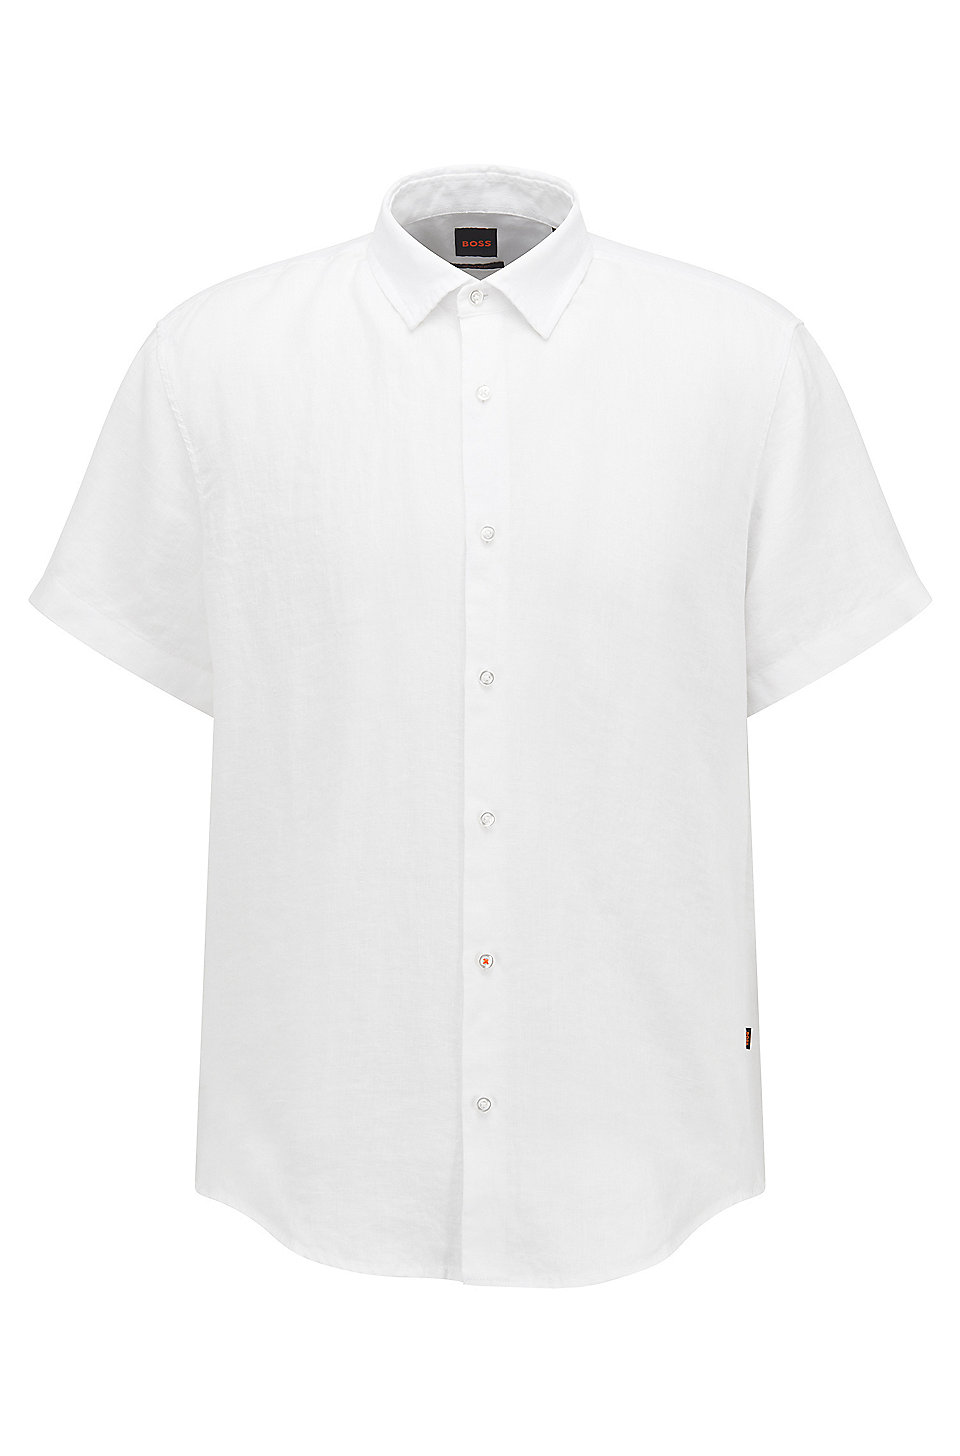 Rabatt 42 % Primark Poloshirt HERREN Hemden & T-Shirts Stricken Grau/Weiß M 